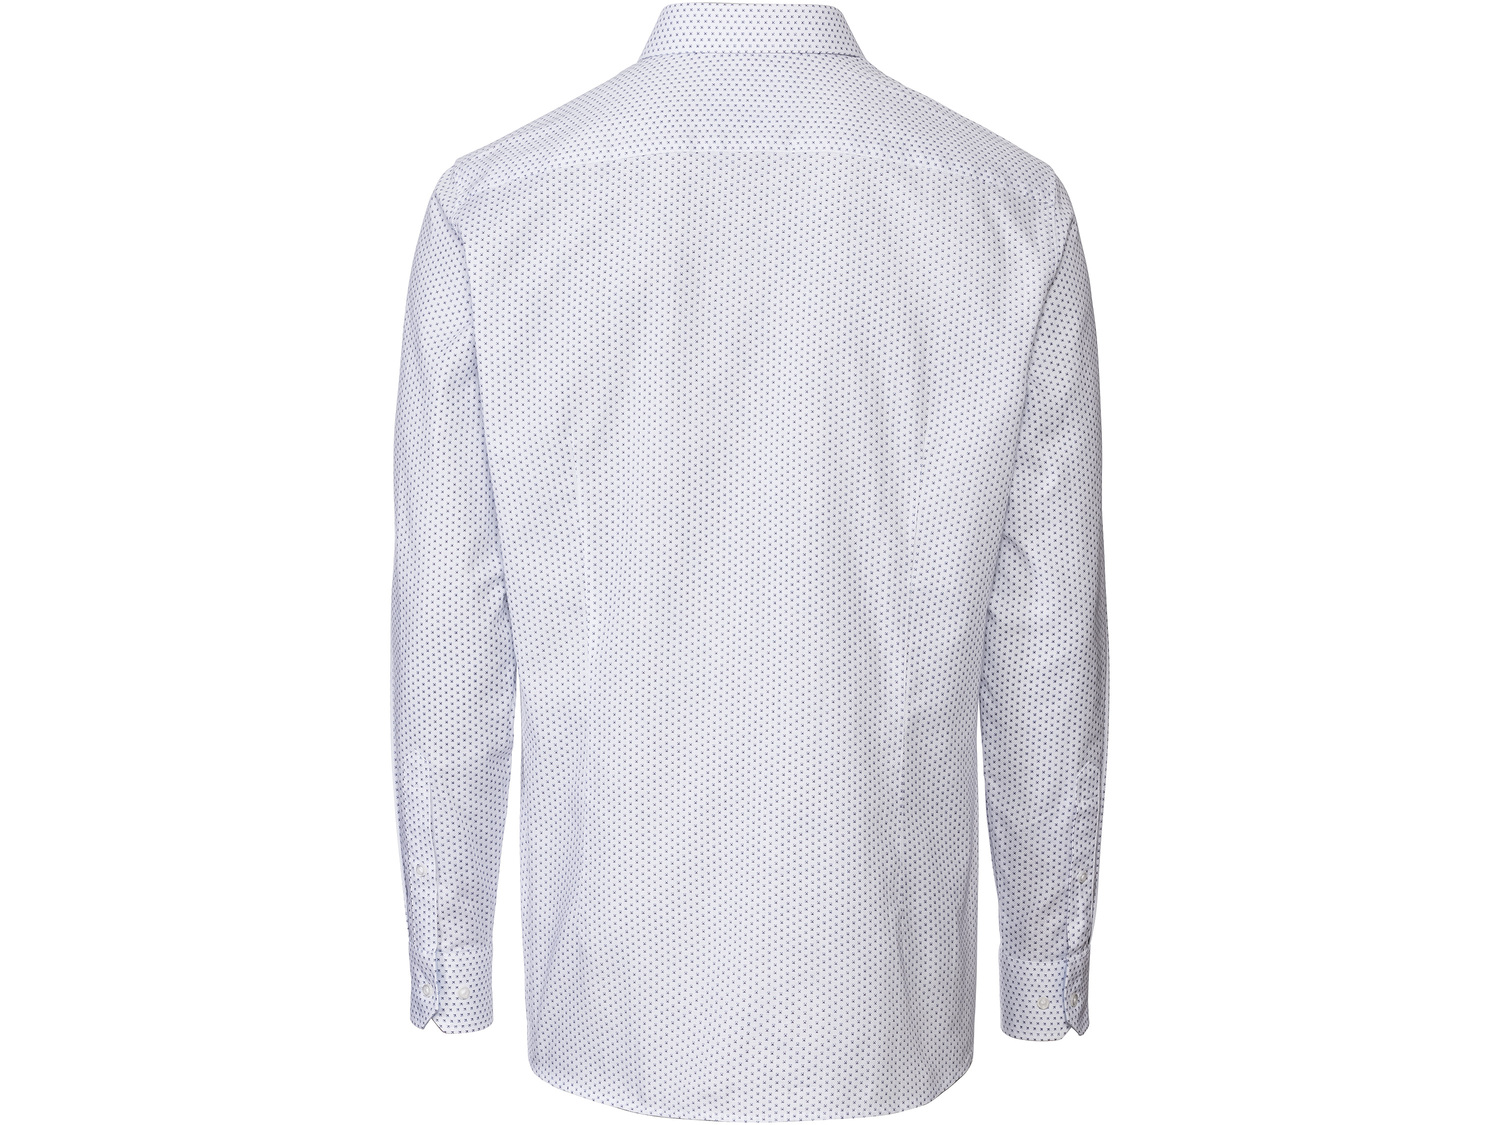 Koszula biznesowa męska , cena 49,99 PLN 
- rozmiary: 40-42
- taliowany krój
- ...